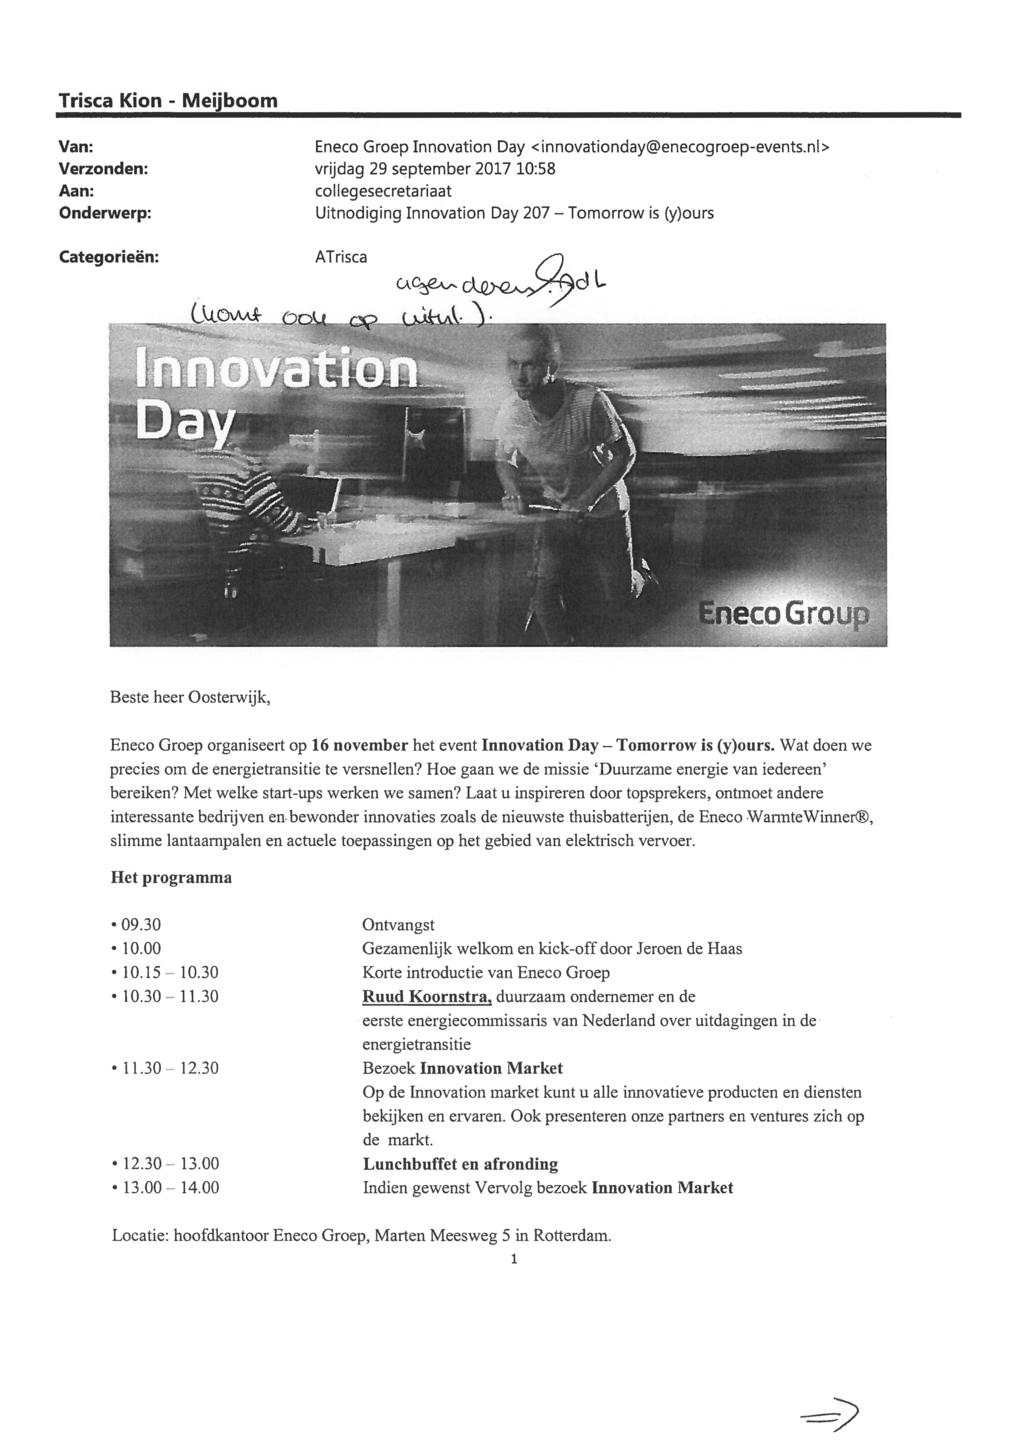 Trisca Kion - Meijboom Van: Verzonden: Aan: Onderwerp: Eneco Groep Innovation Day <innovationday@enecogroep-events.